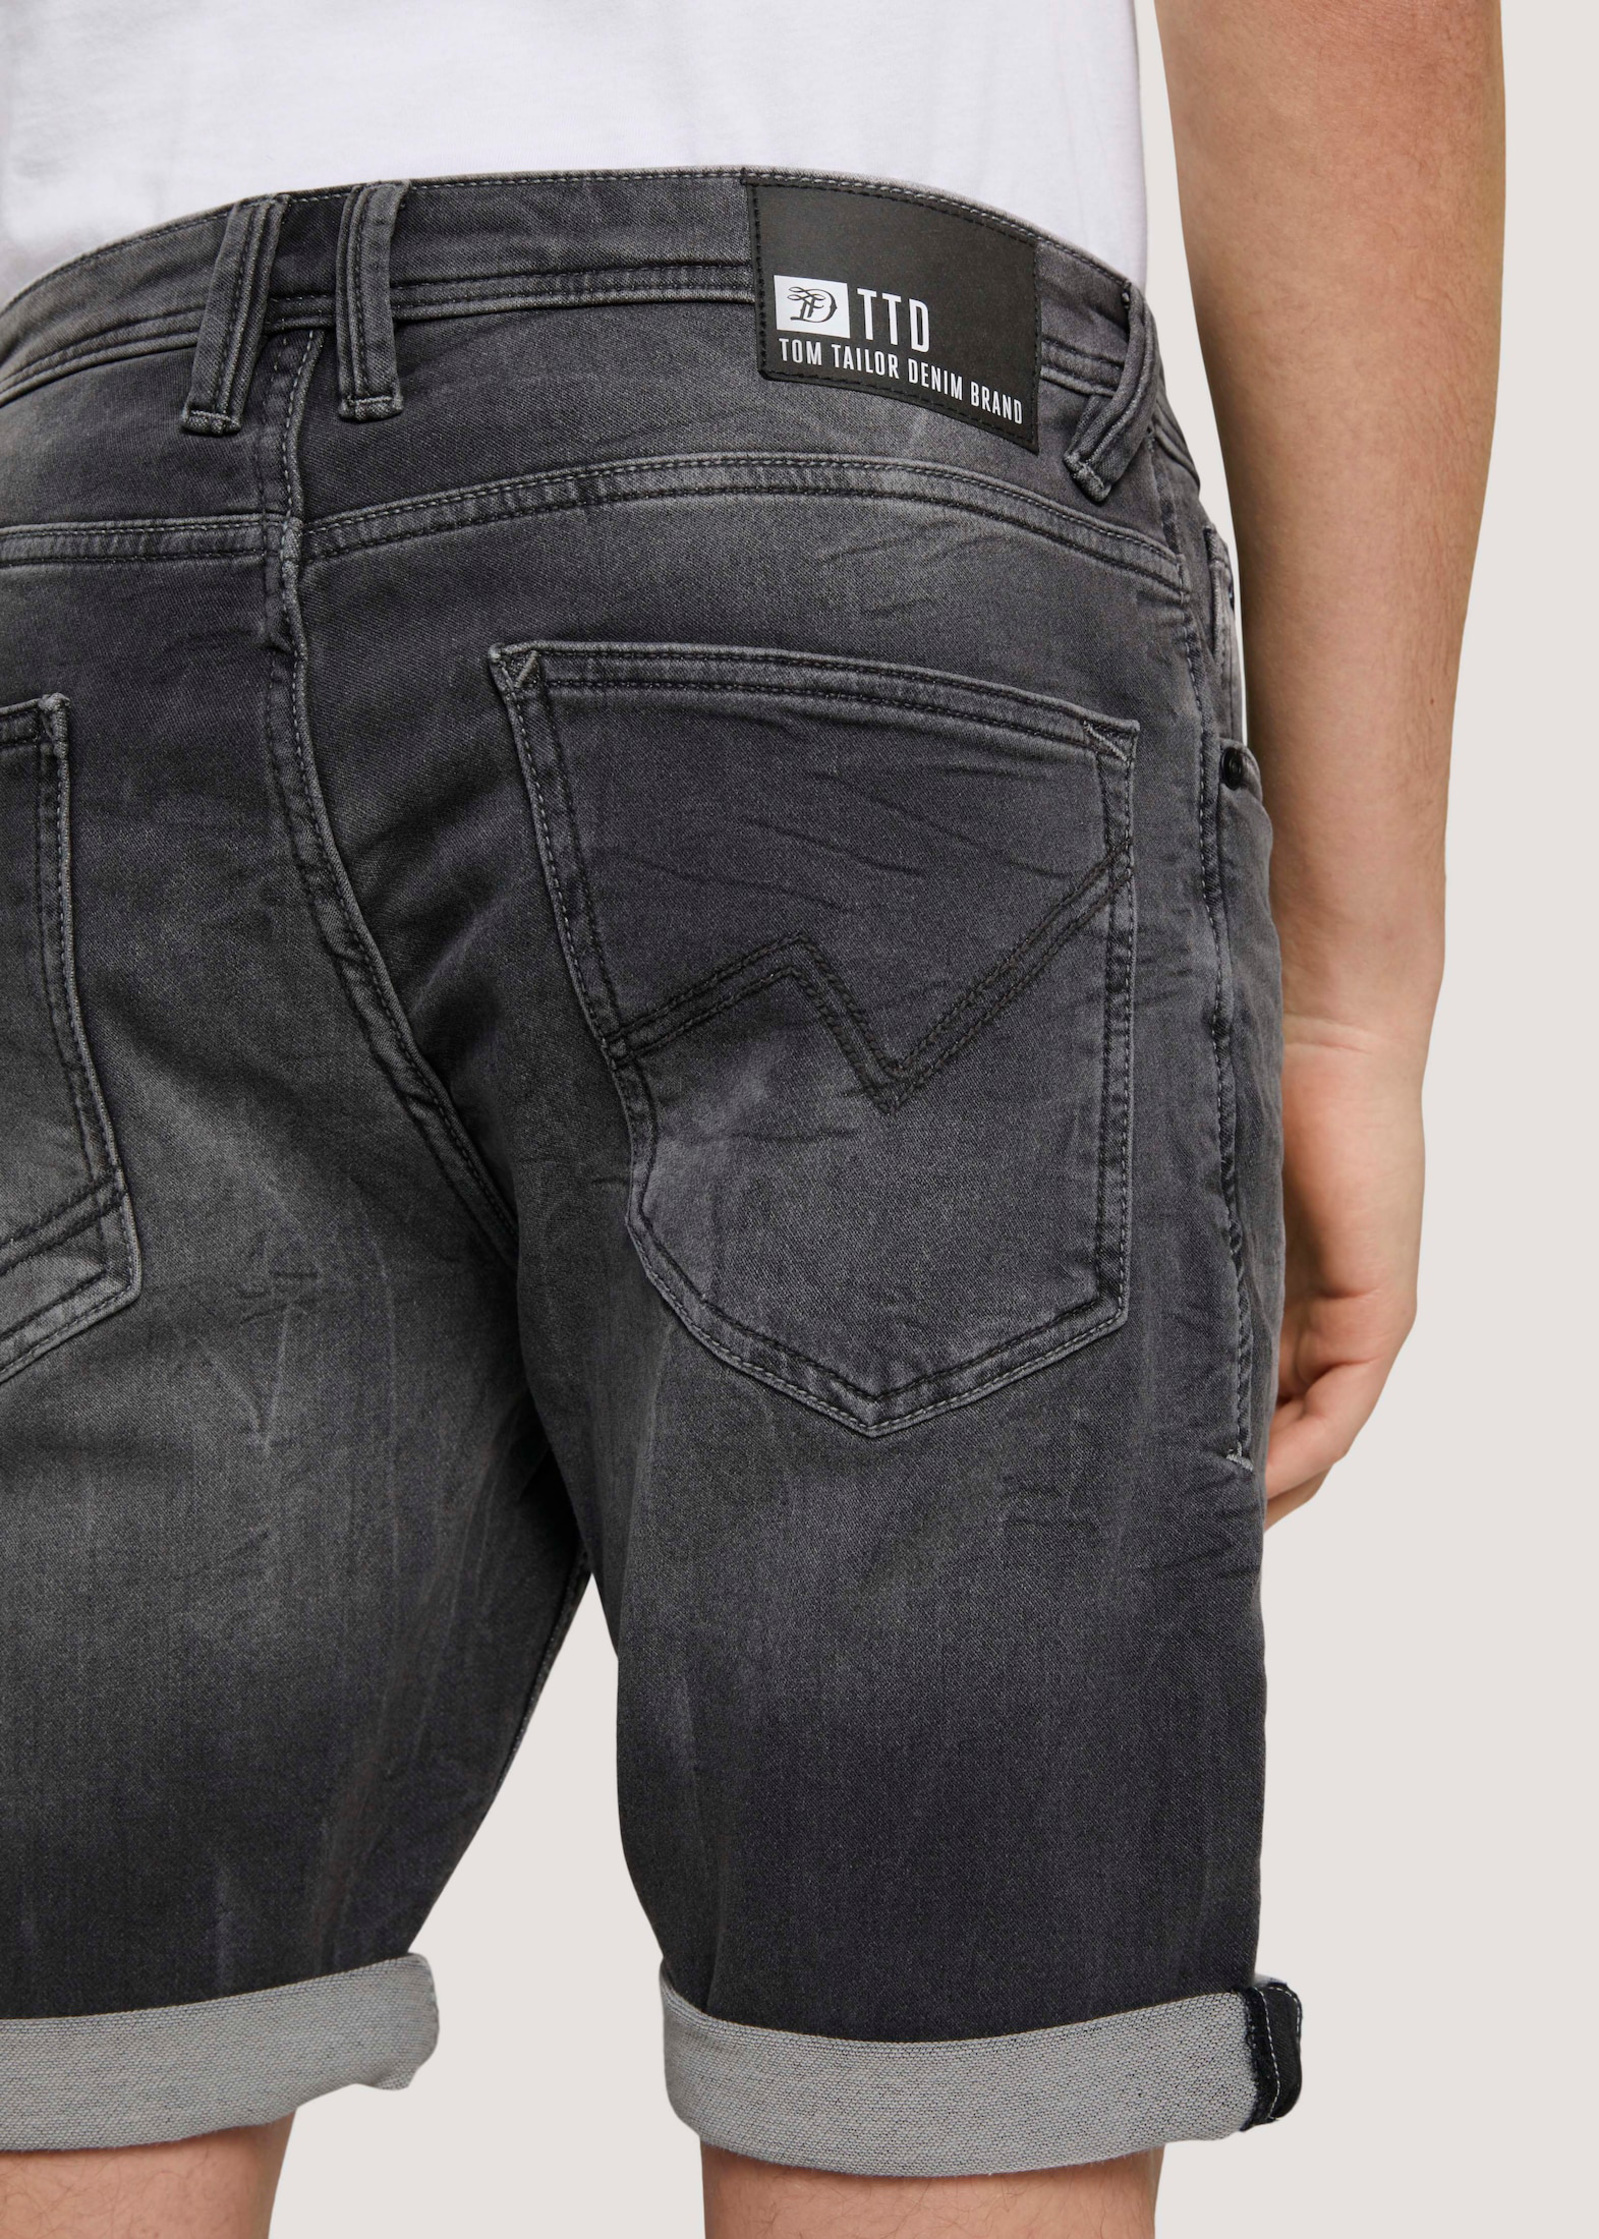 Mid Tom Tailor® Shorts XL Regular Denim Stone Grey Size - Denim Used